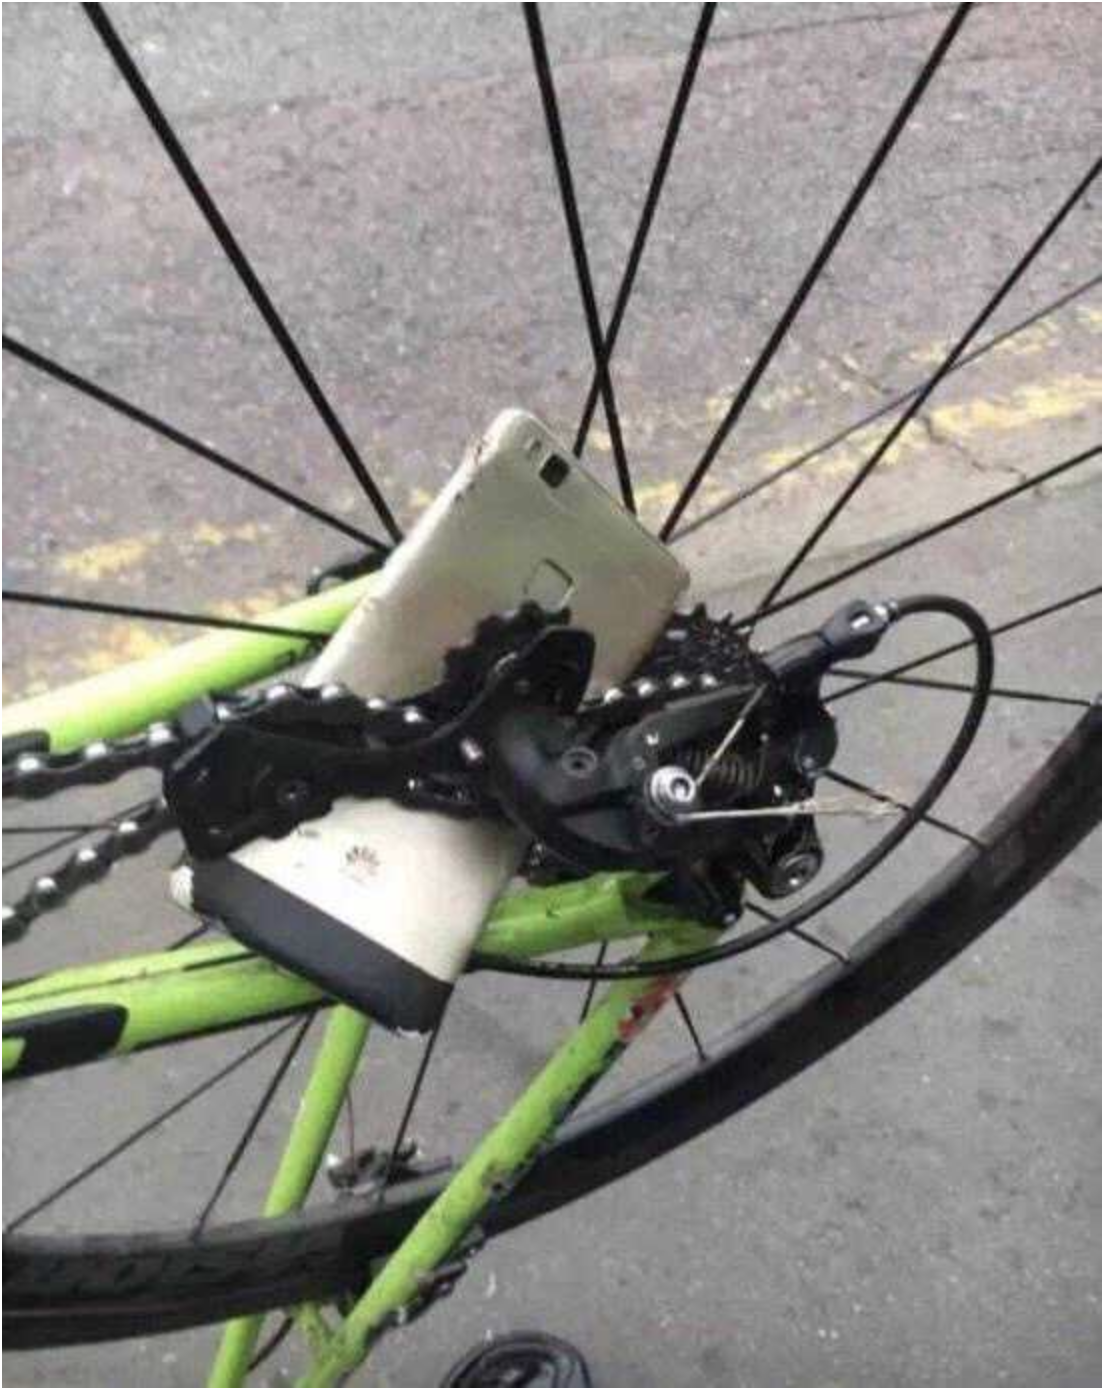 A mangled phone is tangled in a bike&#x27;s chains